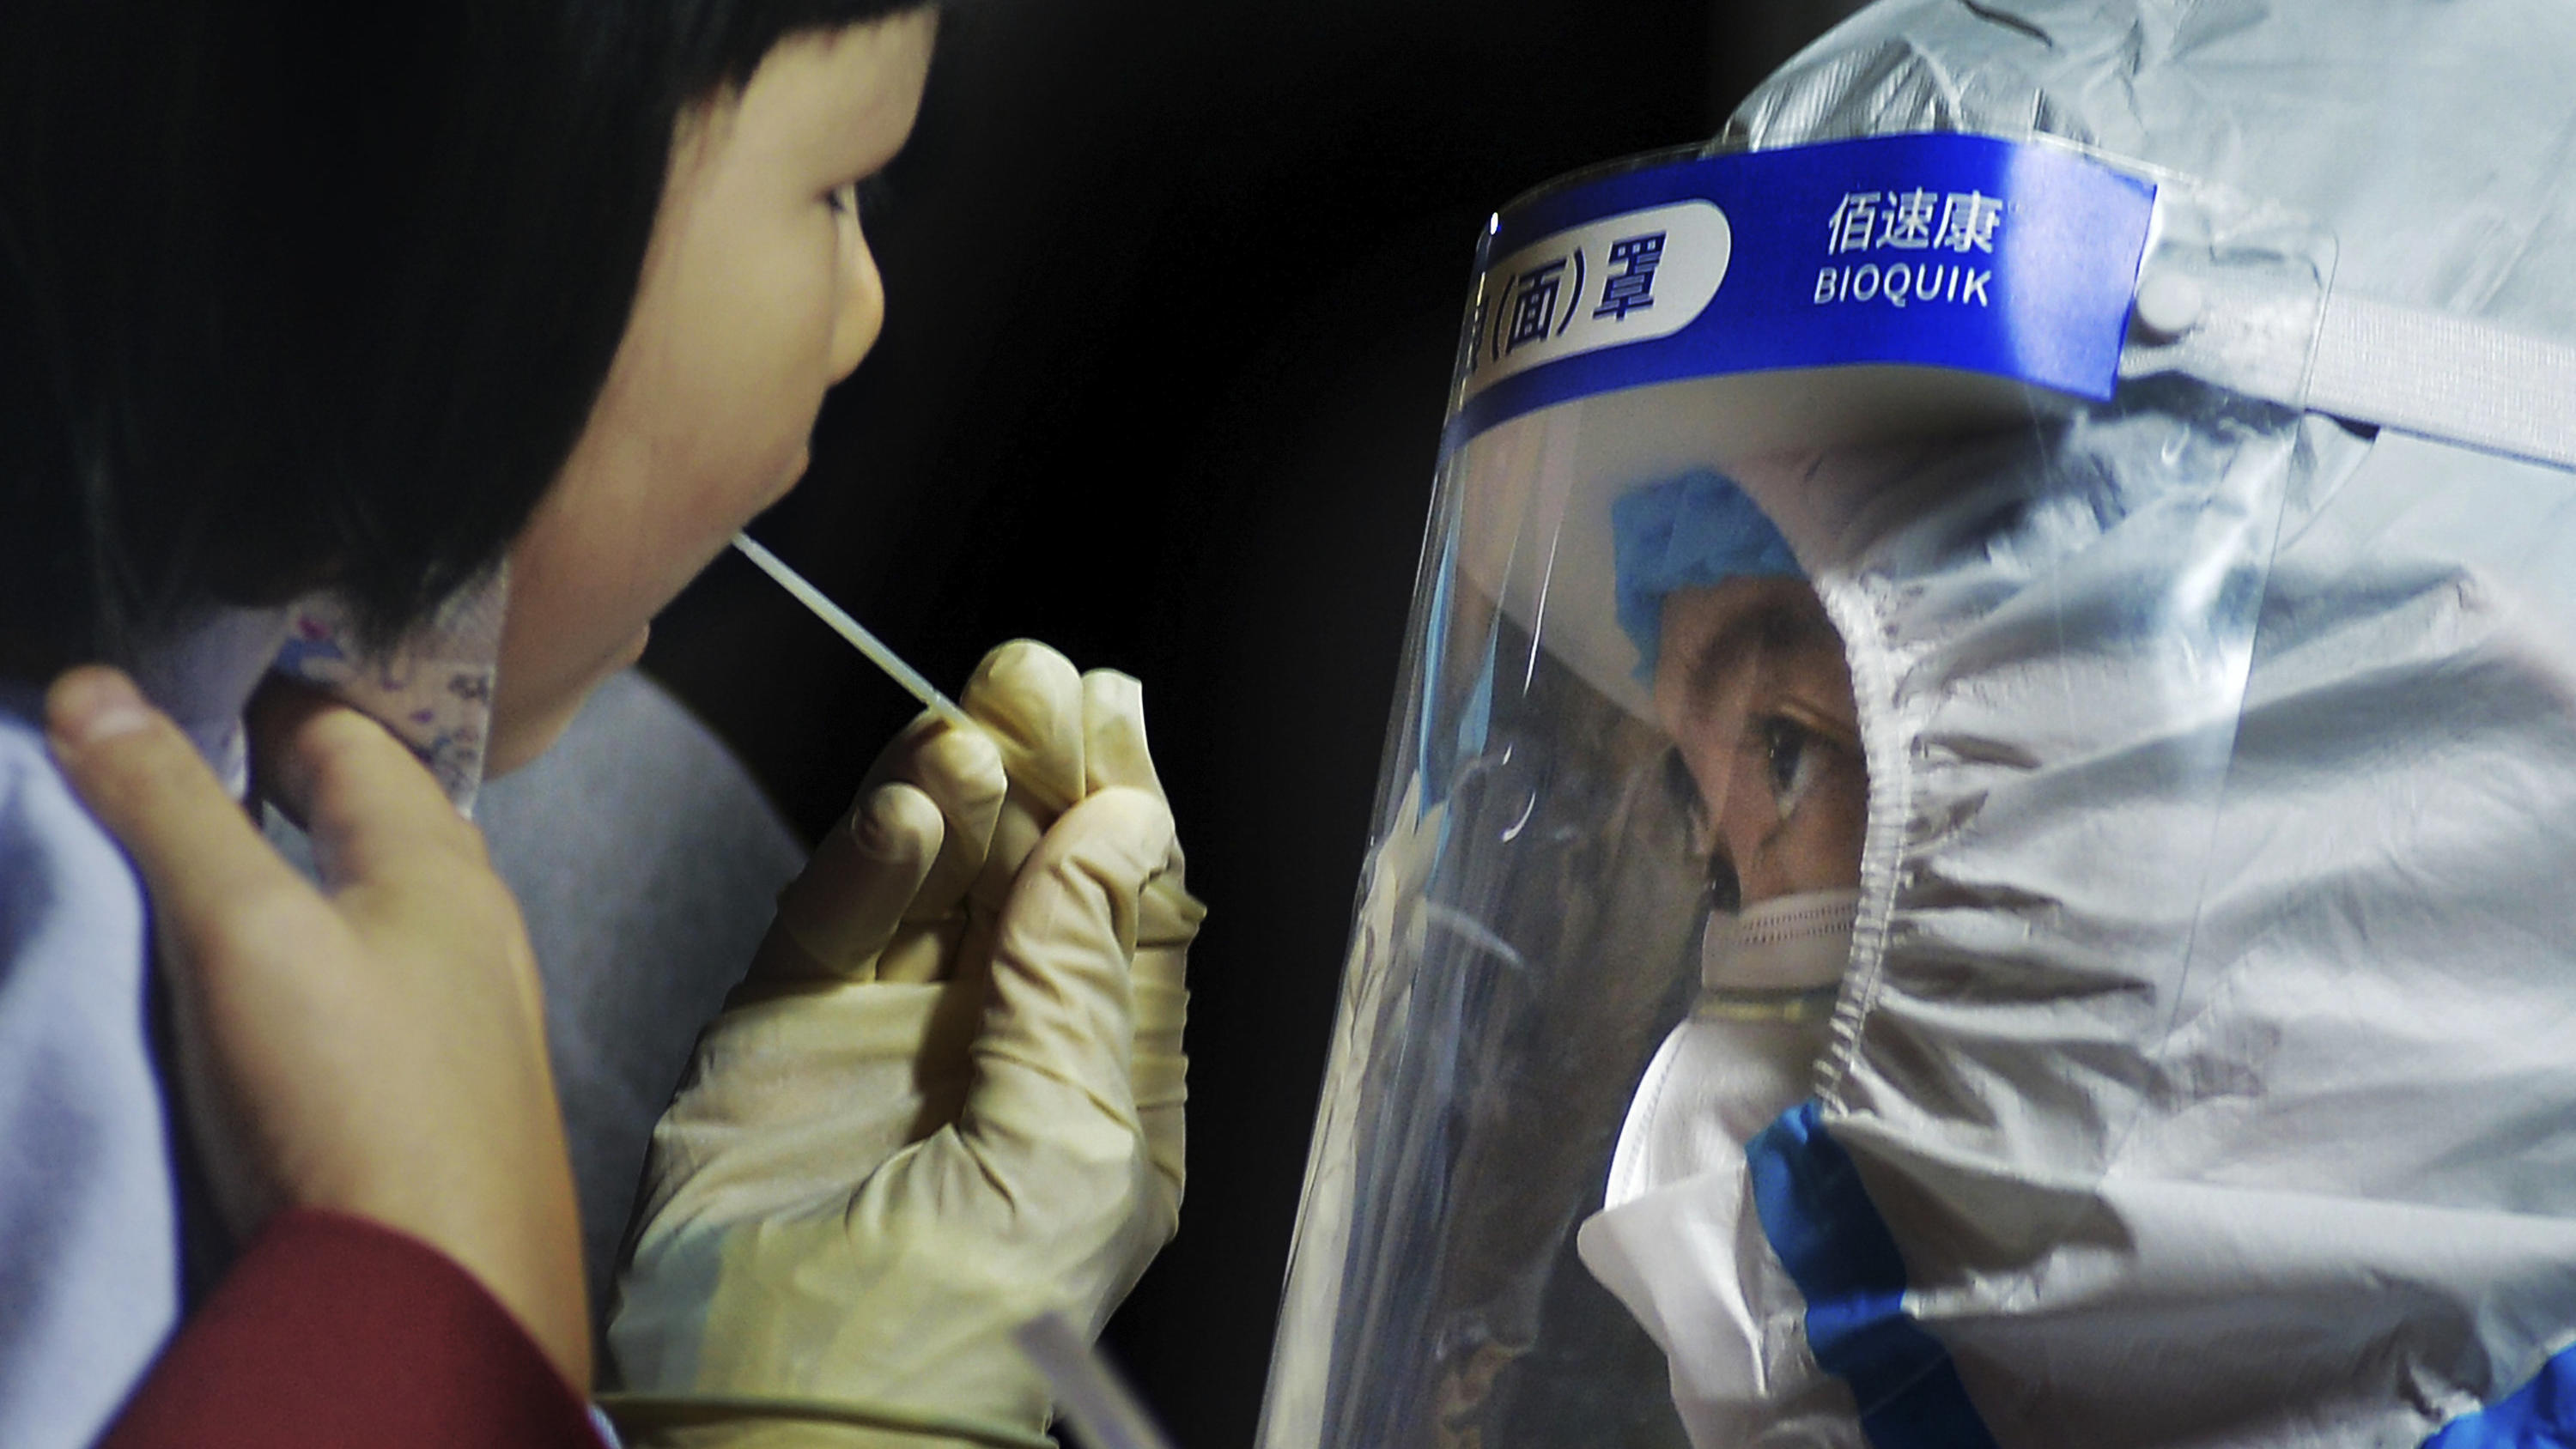 15.10.2020, China, Qingdao: Ein medizinisches Personal im Schutzanzug nimmt einen Abstrich von einem Kind in der Nähe eines Wohngebiets. Nach einem neuen Ausbruch des Coronavirus hat die ostchinesische Metropole Qingdao innerhalb von vier Tagen einen